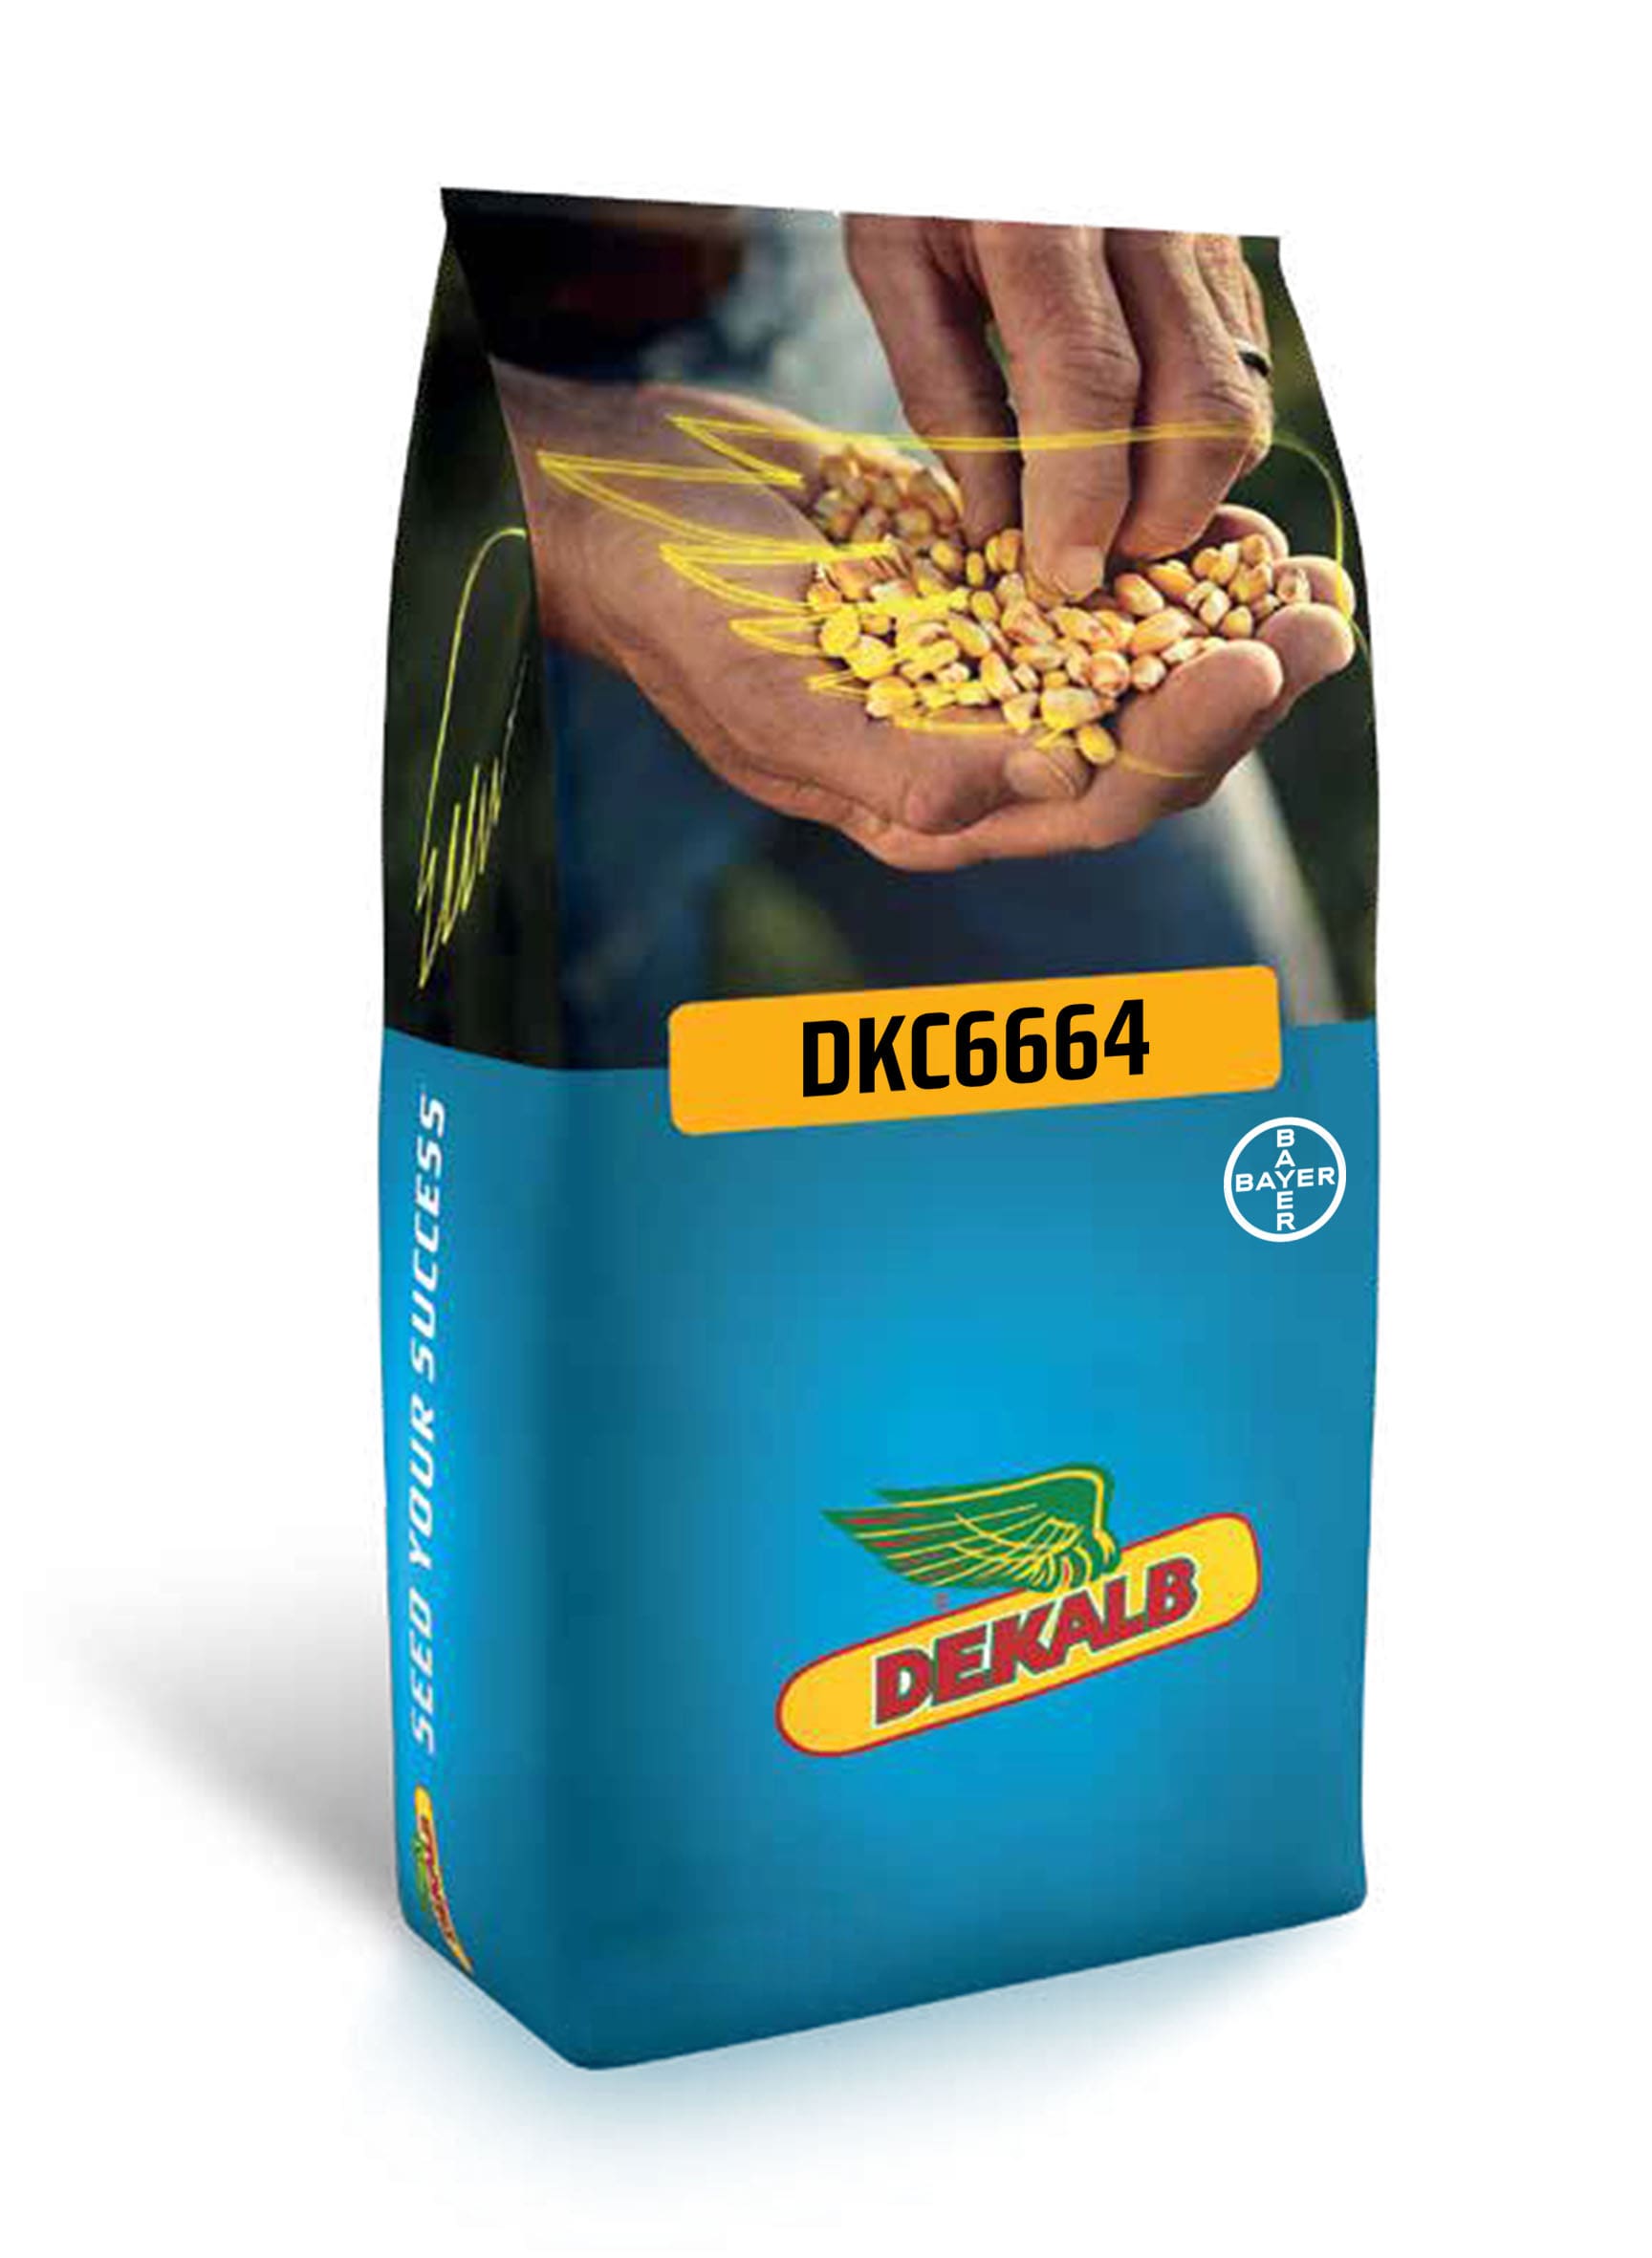 DKC6664